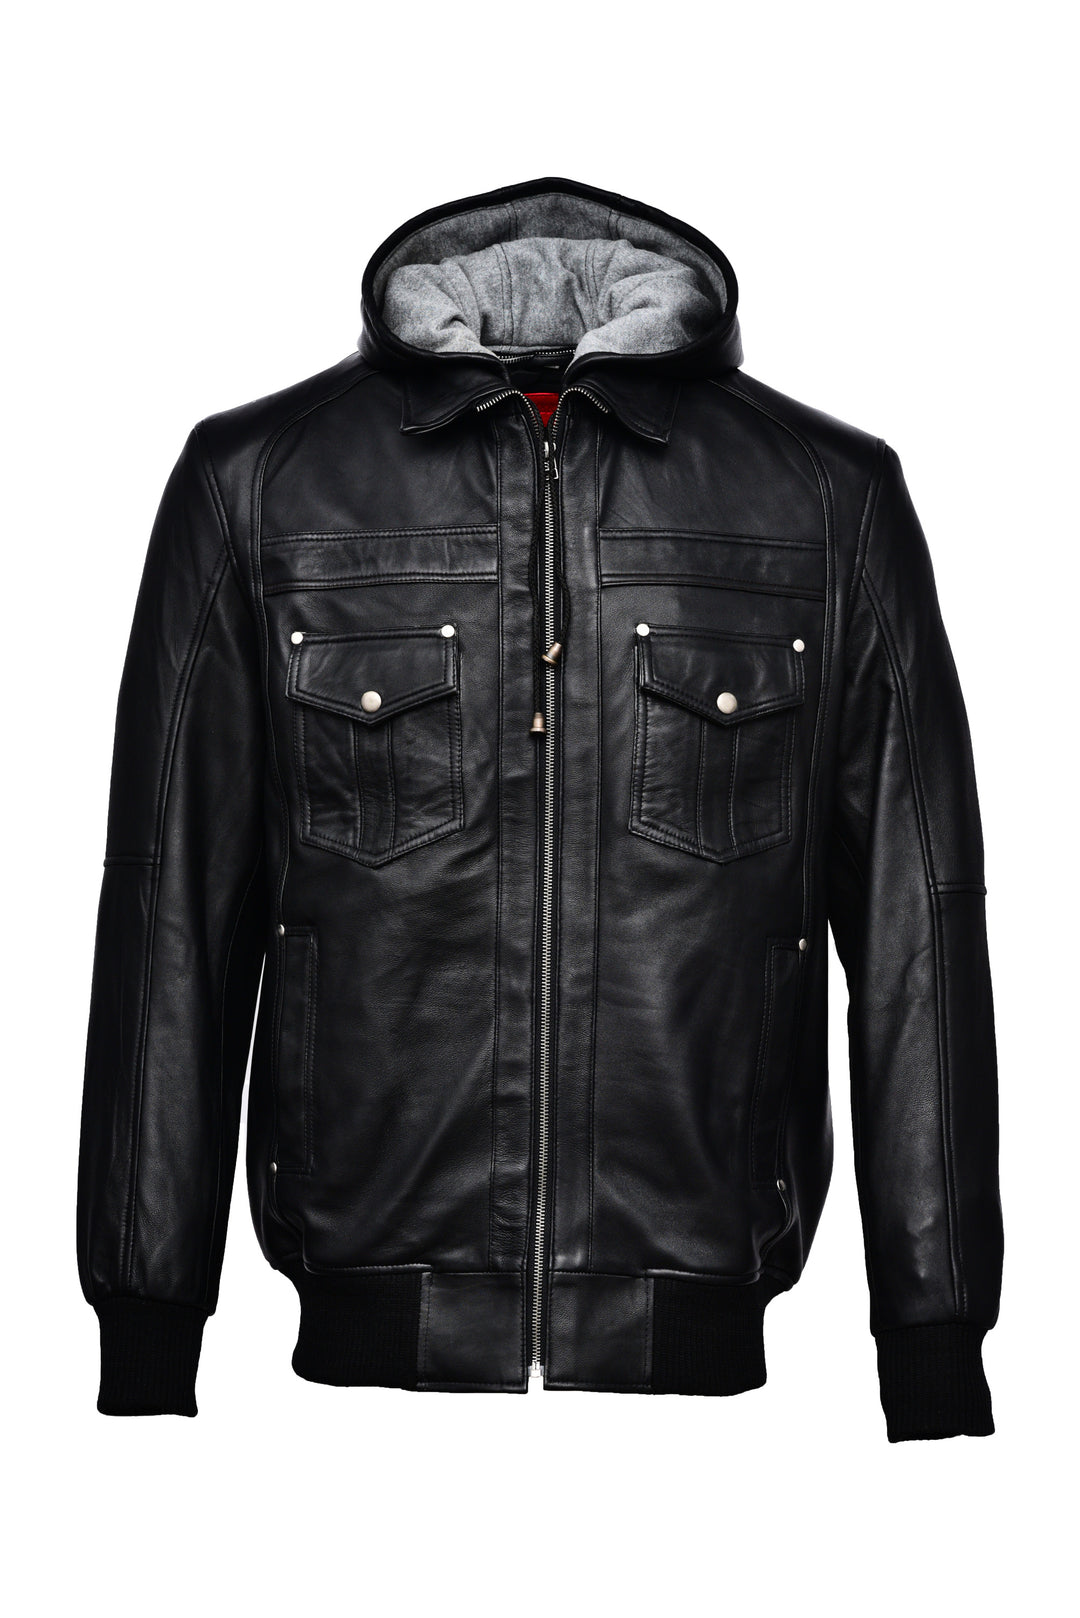 Leather Jacket Hoodie Online